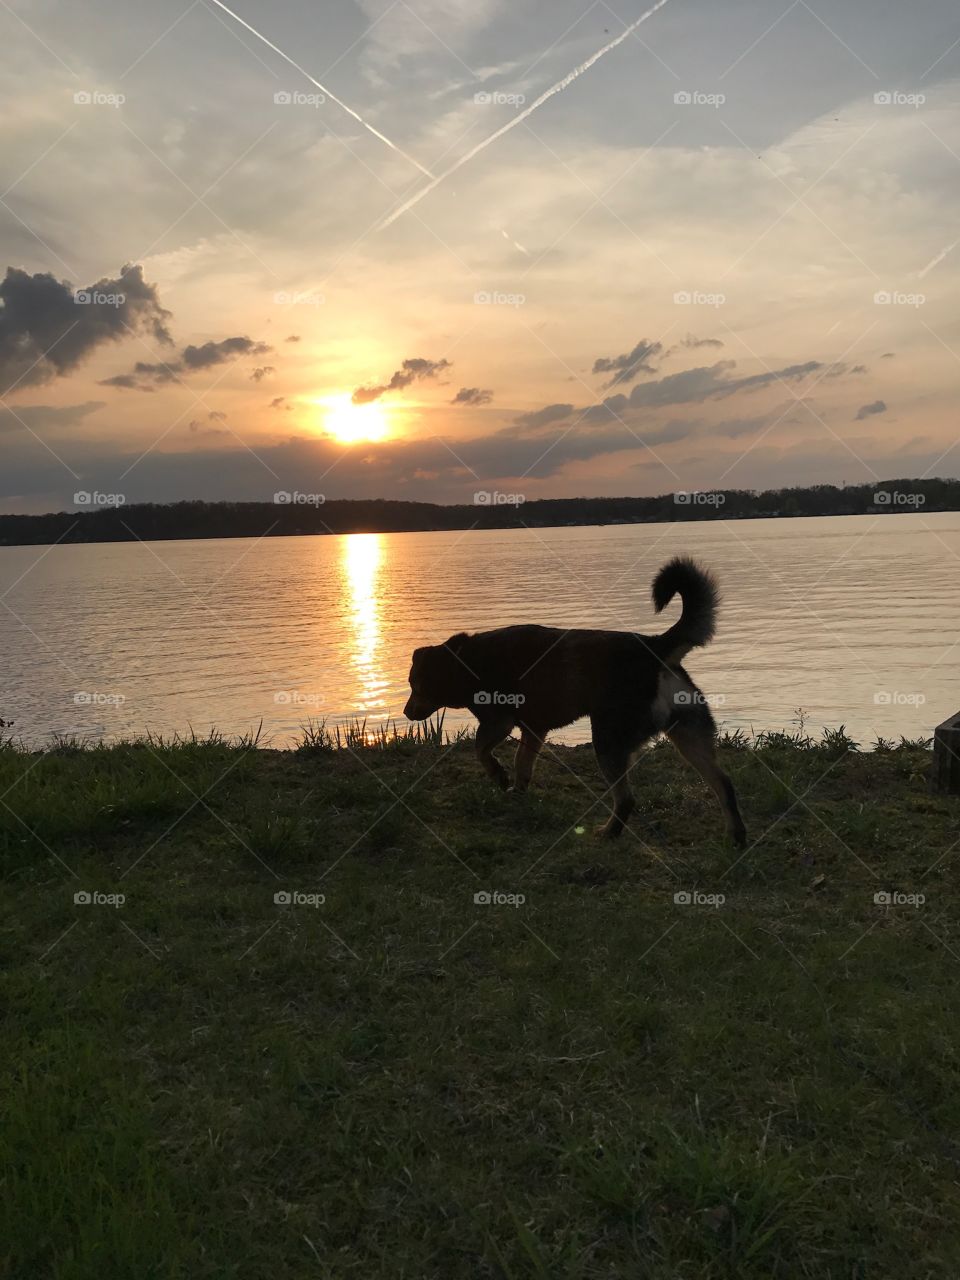 Landscape, Water, Lake, Sunset, Mammal